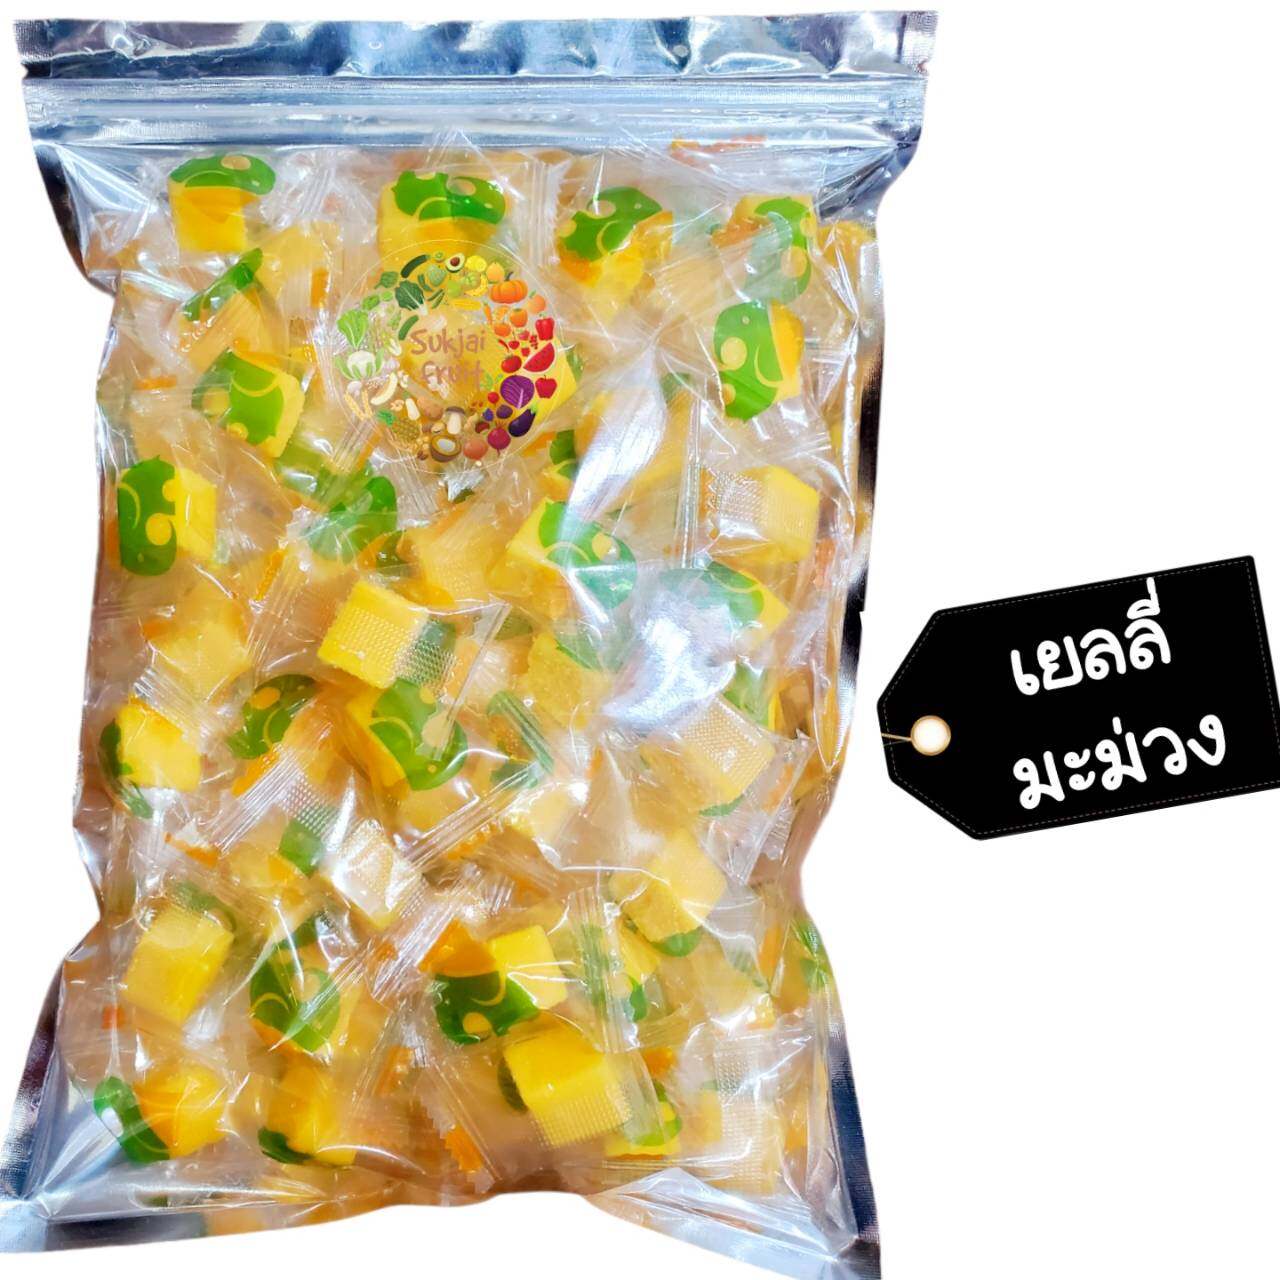 เยลลี่ มะม่วง น้ำดอกไม้ 300 กรัม (70 เม็ด) Jelly mango 300 g  - Dried fruit ผลไม้ อบแห้ง ขนมไทย ขนม OTOP เยลลี่มะม่วง ผลไม้อบแห้ง บ๊วย ผลไม้อบแห้ง